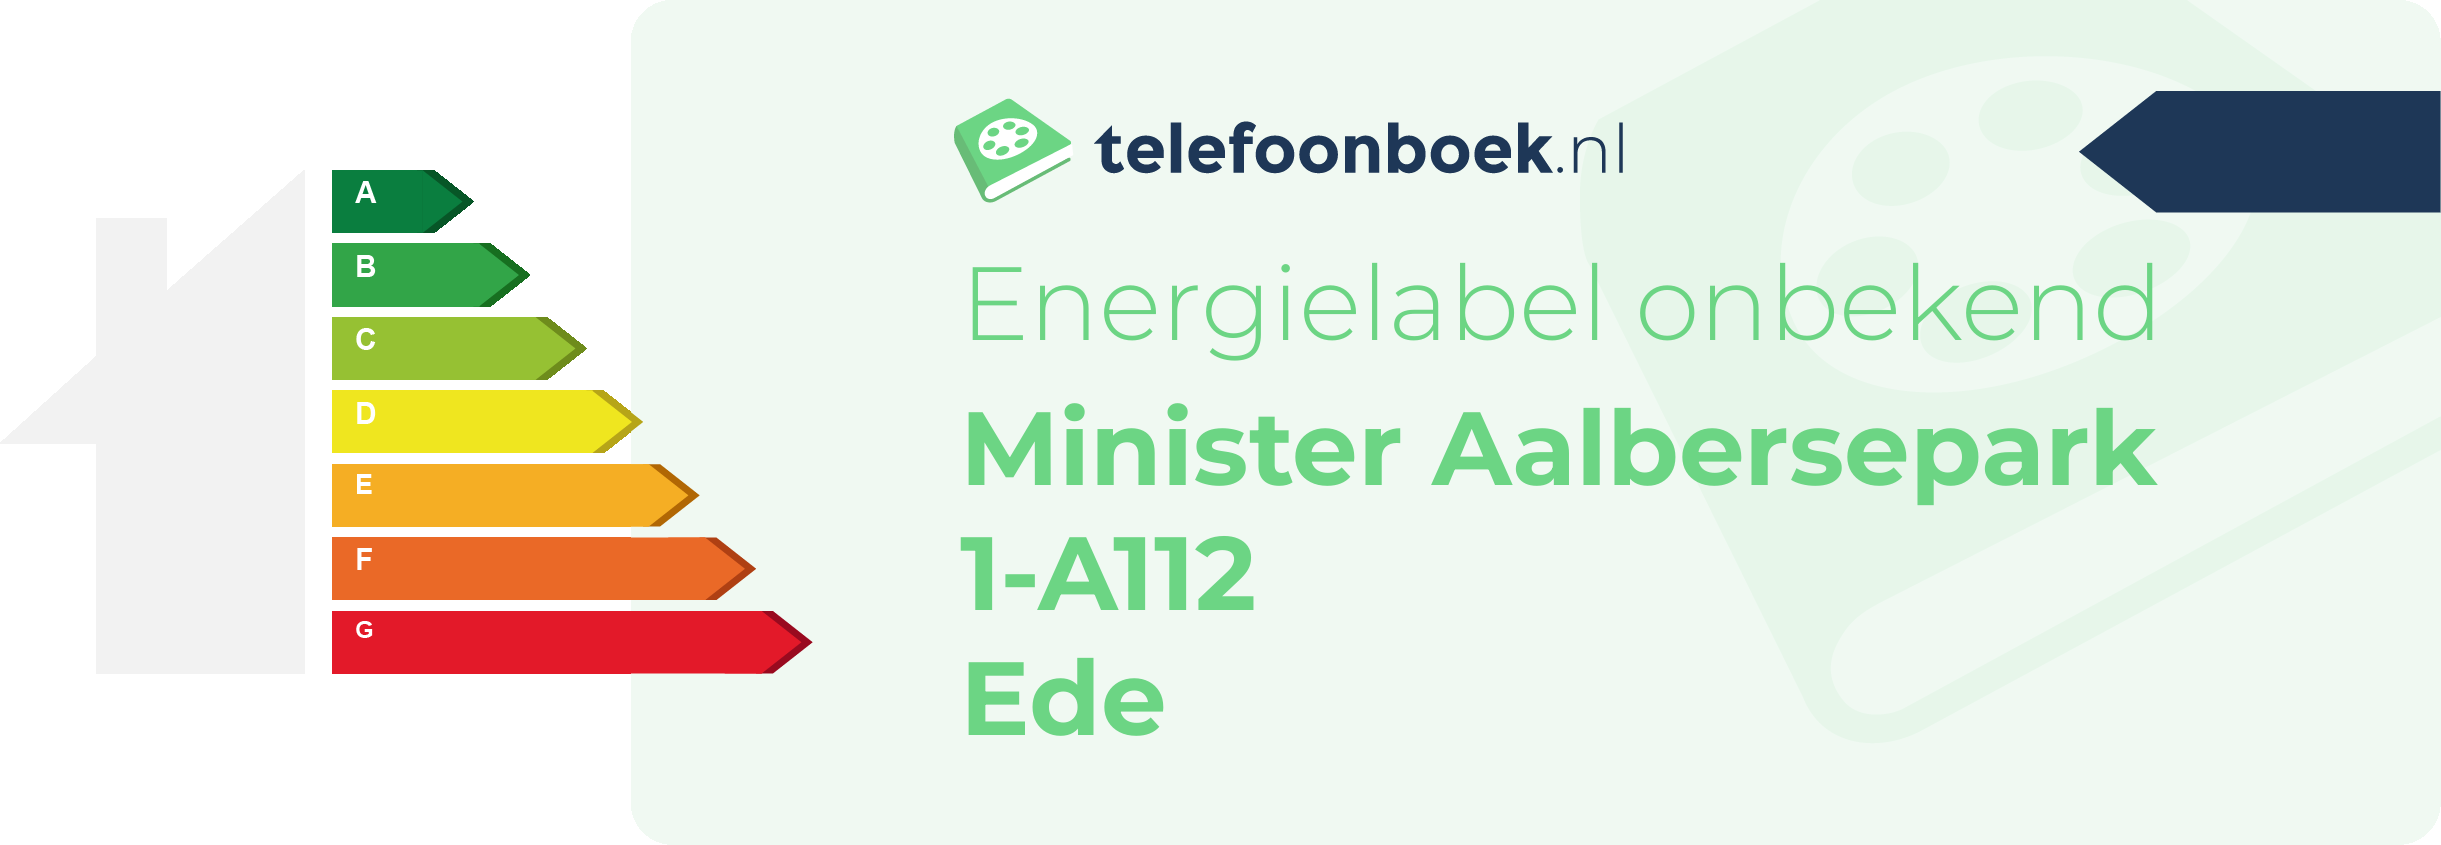 Energielabel Minister Aalbersepark 1-A112 Ede